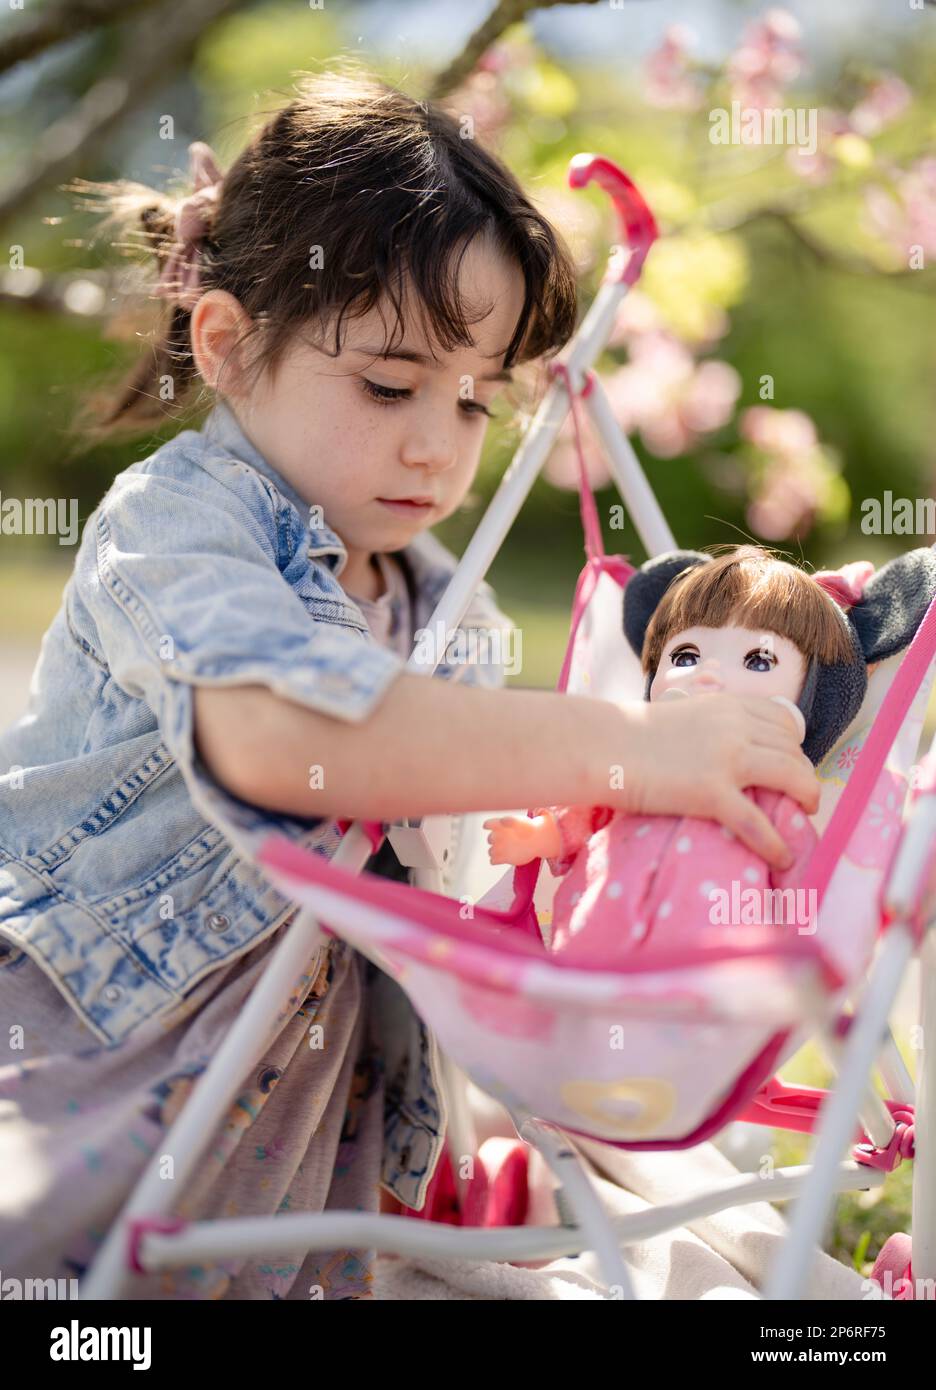 une fille de 5 ans joue avec ses poupées dans une poussette - mimycing parental Banque D'Images